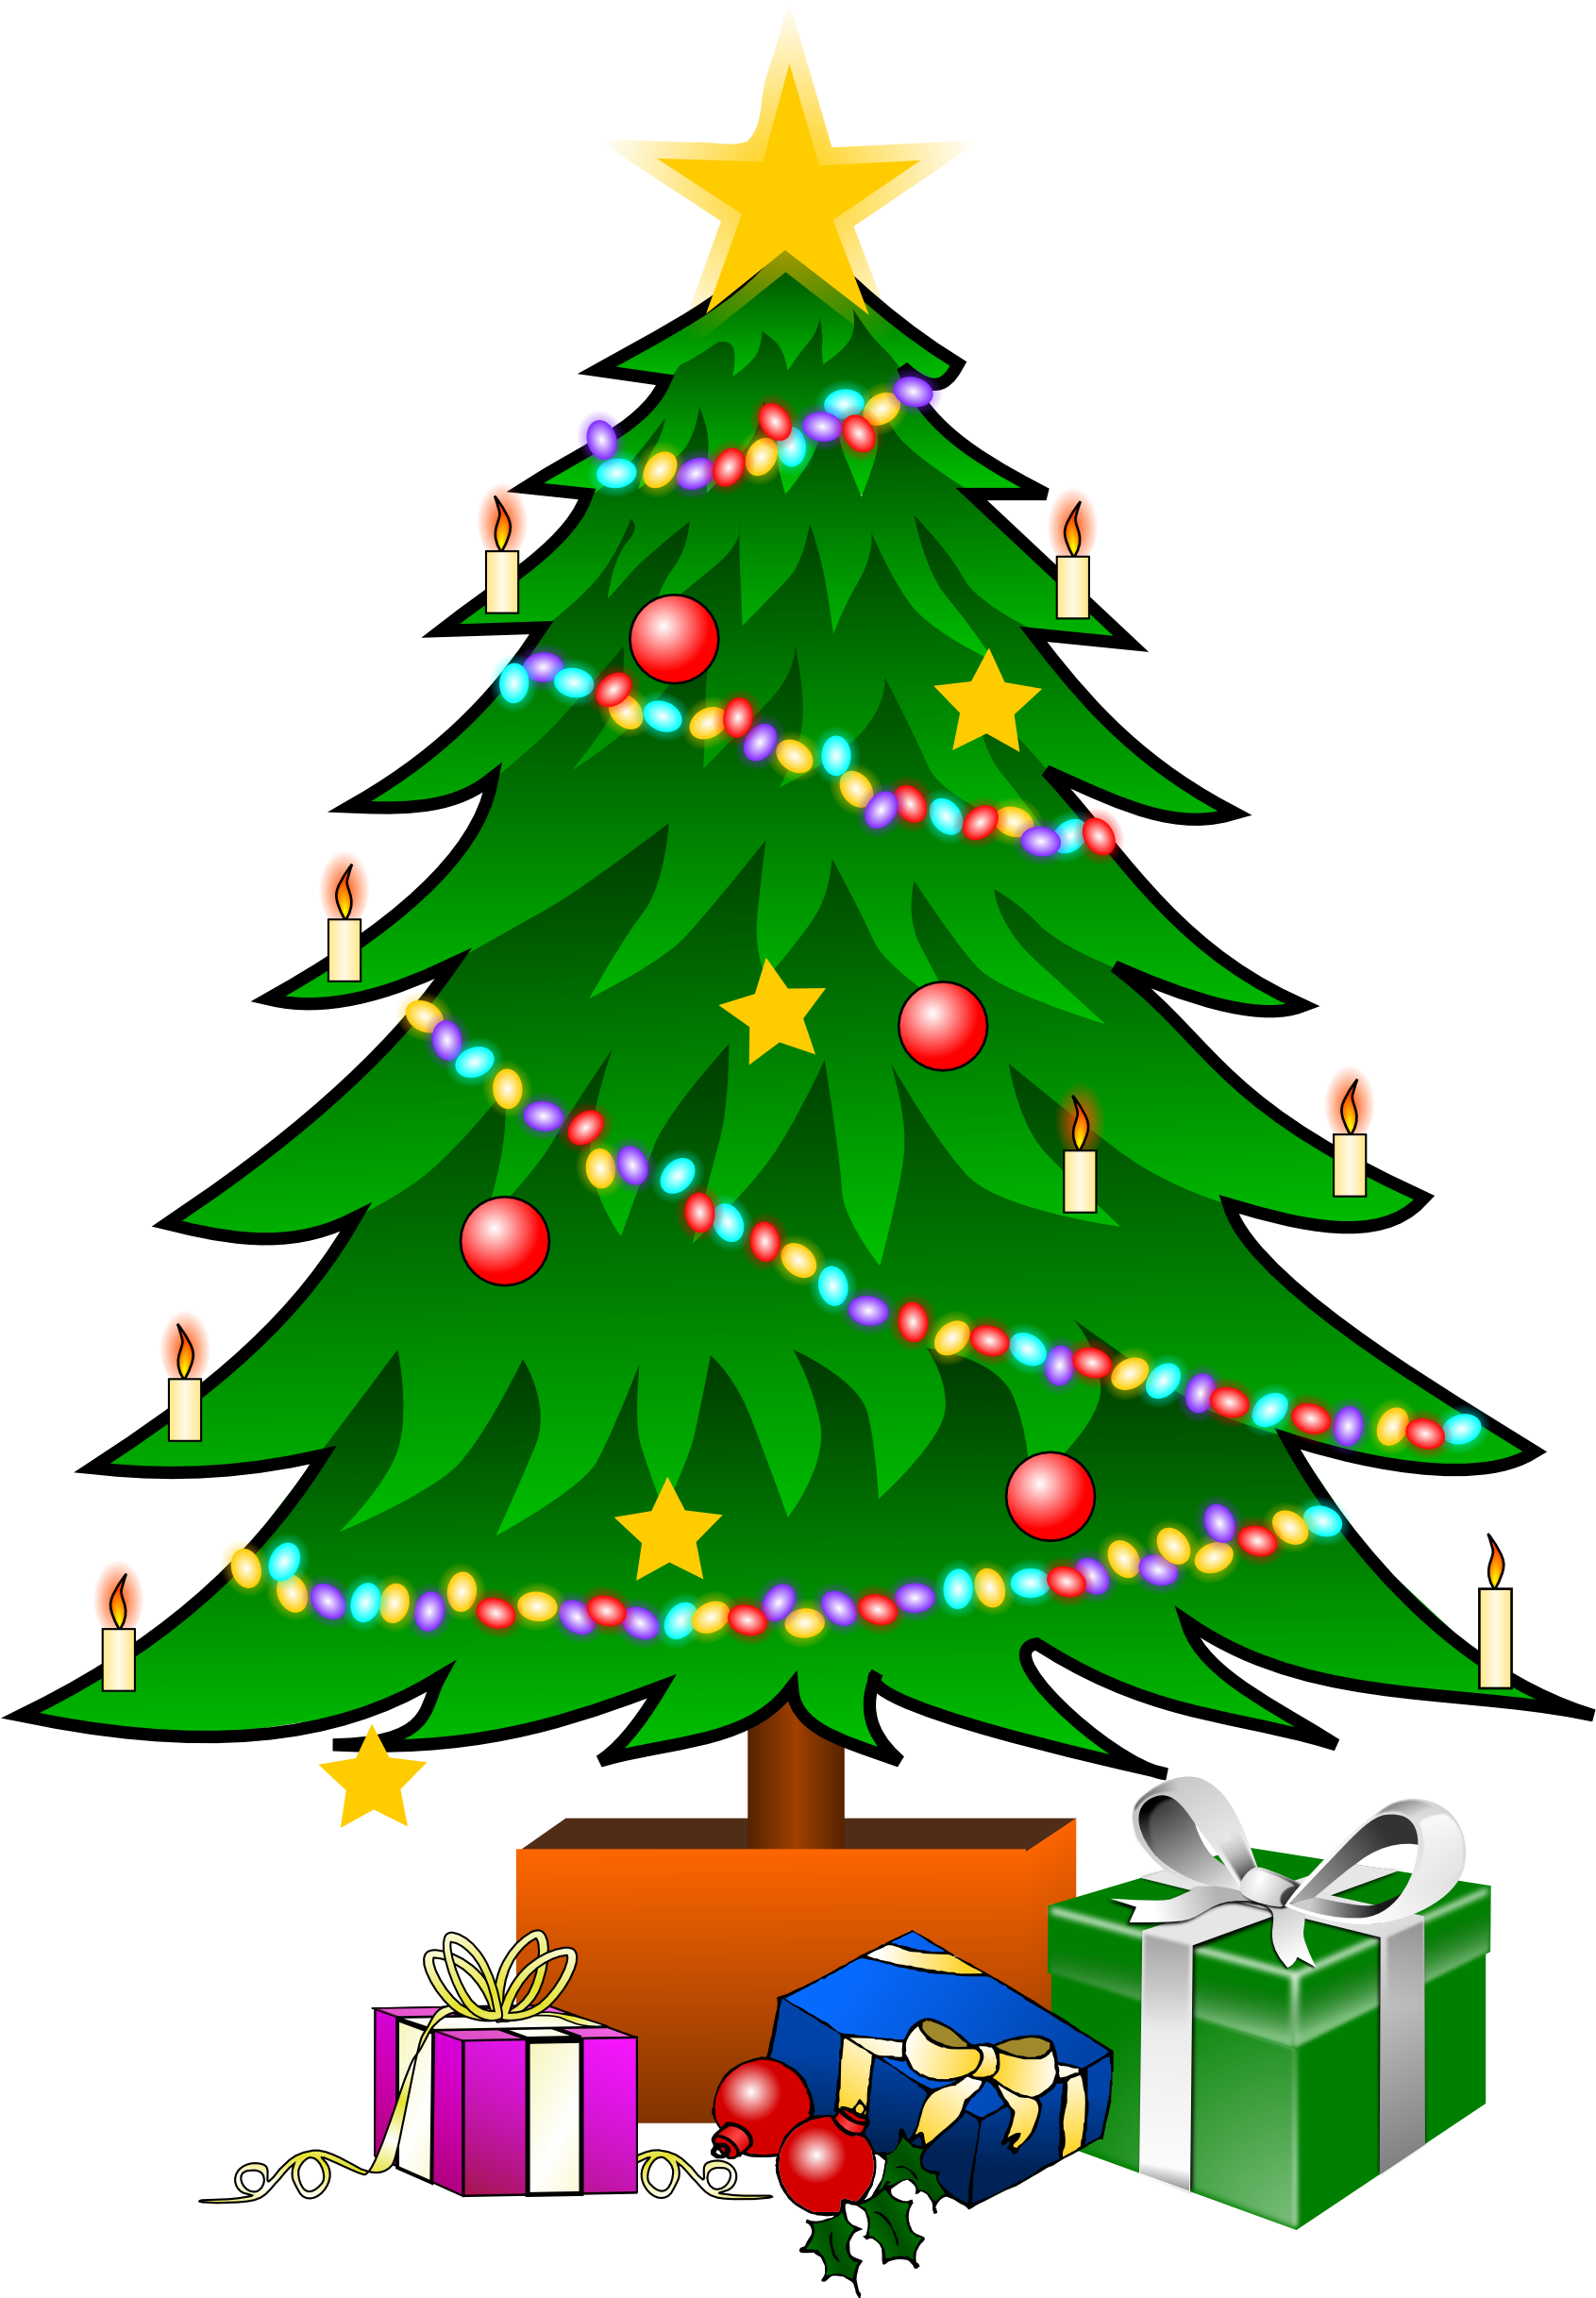 Christmas Tree Graphic Christmas Tree Graphic Christmas - Christmas Tree Cartoon With Presents (1979x2799)